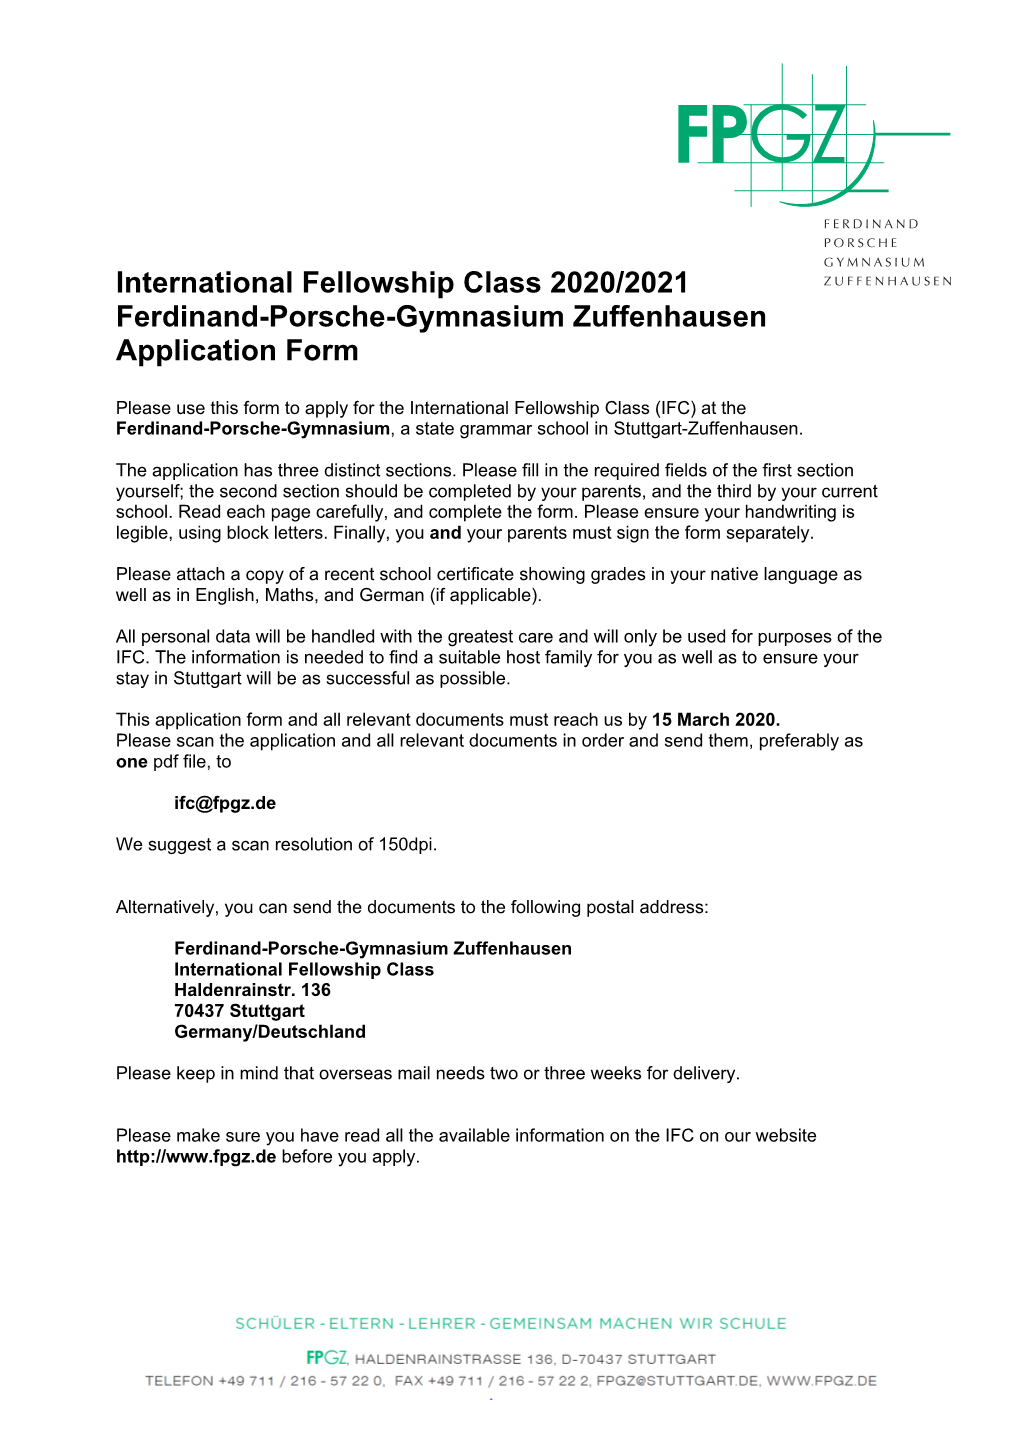 International Fellowship Class 2020/2021 Ferdinand-Porsche-Gymnasium Zuffenhausen Application Form